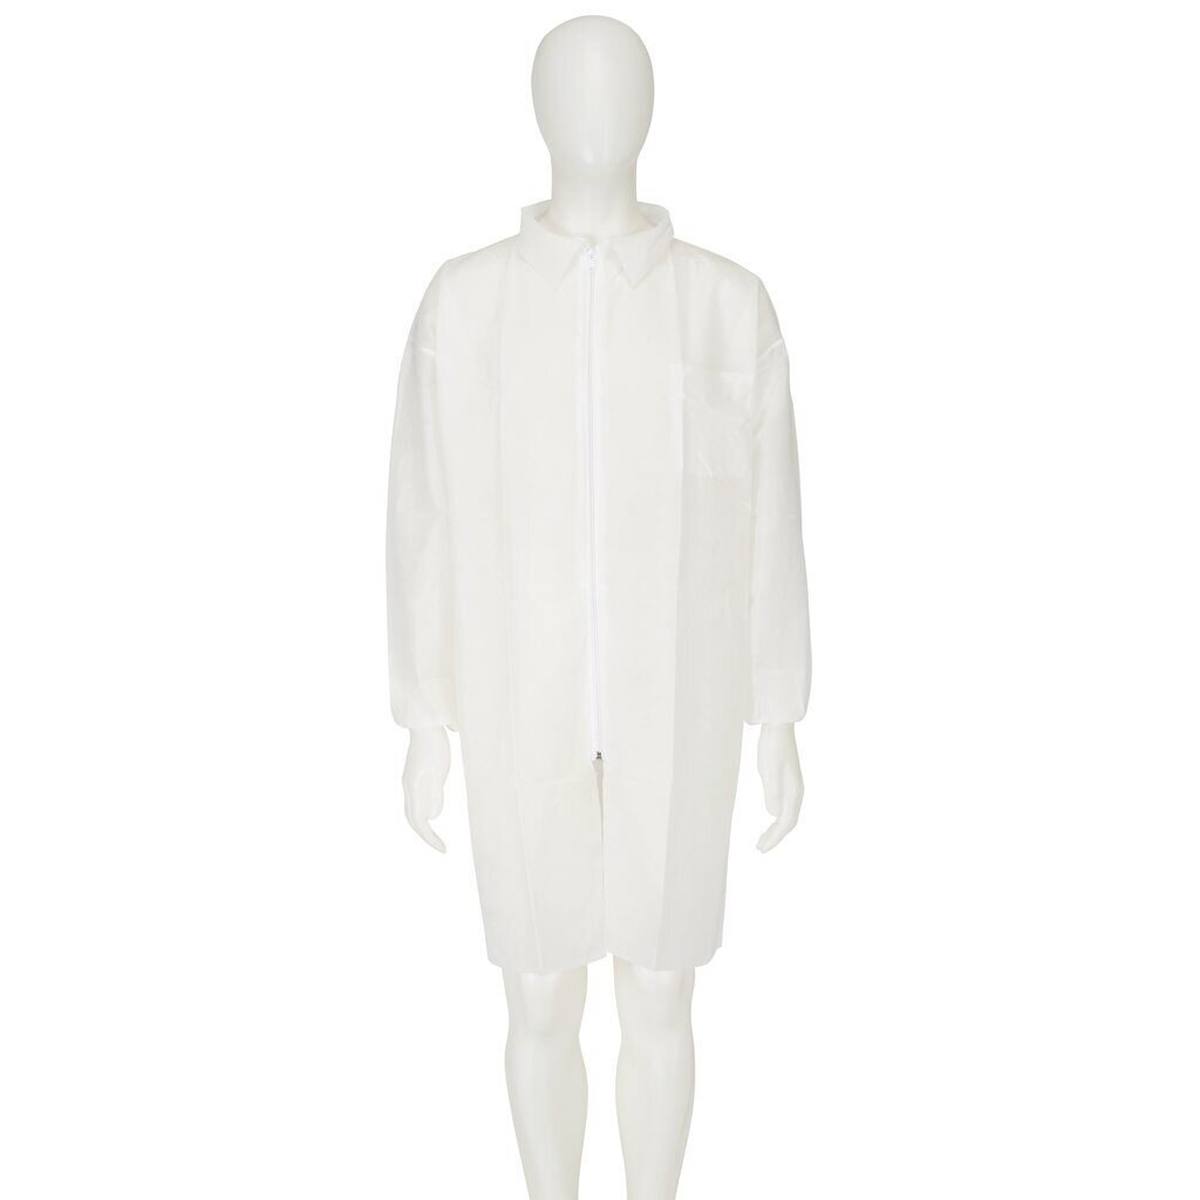 cappotto 3M 4400, bianco, taglia 3XL, materiale 100% polipropilene, traspirante, molto leggero, con chiusura a zip